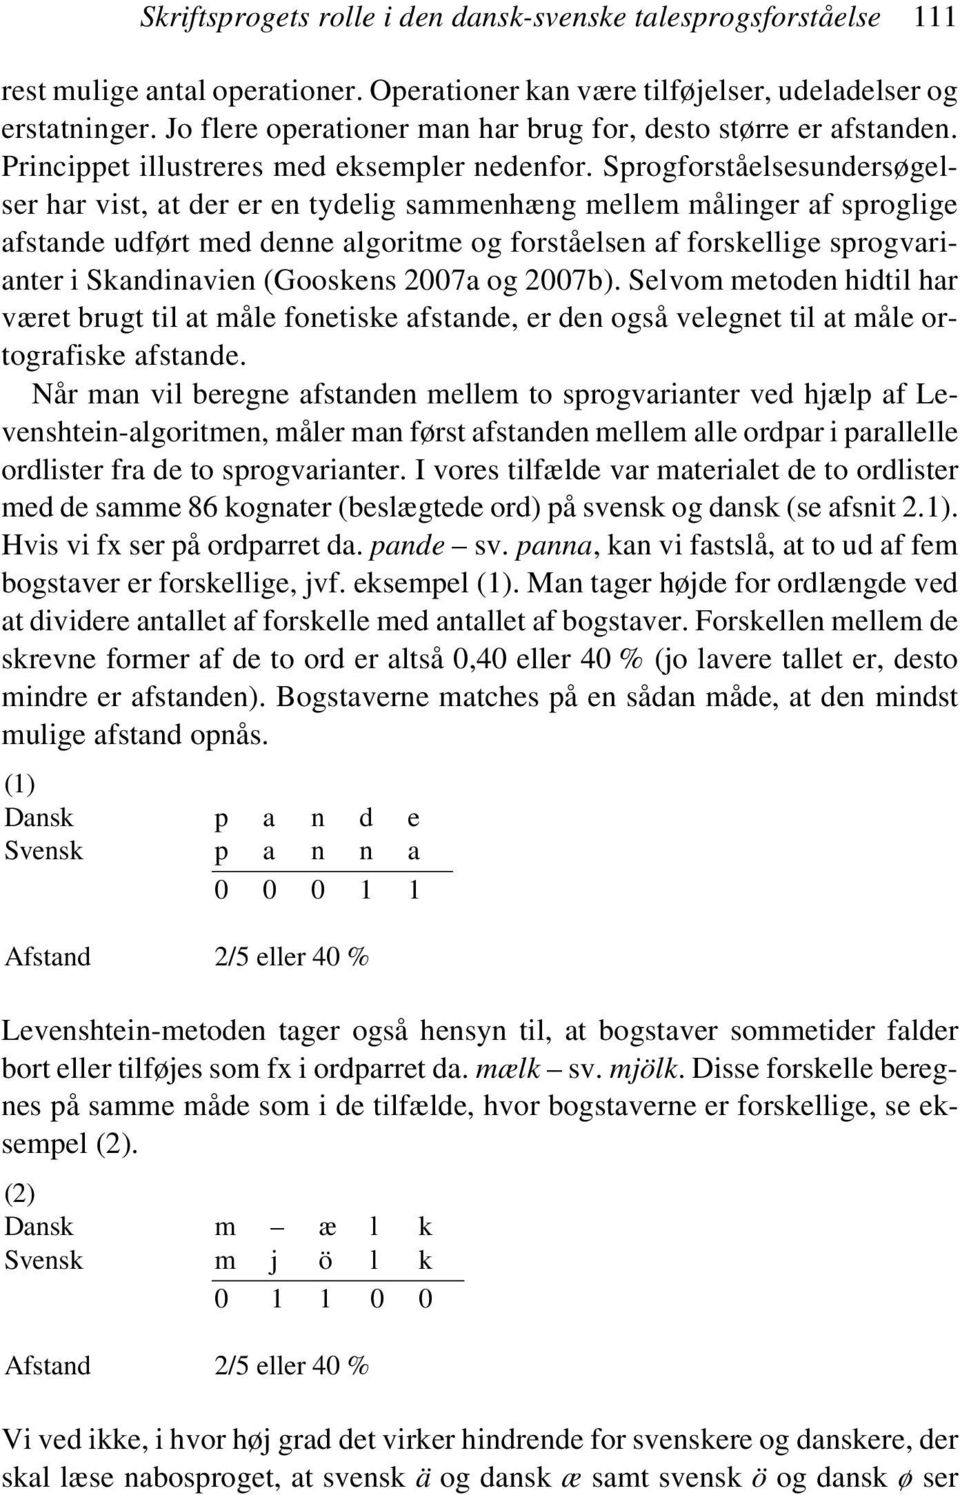 Sprogforståelsesundersøgelser har vist, at der er en tydelig sammenhæng mellem målinger af sproglige afstande udført med denne algoritme og forståelsen af forskellige sprogvarianter i Skandinavien